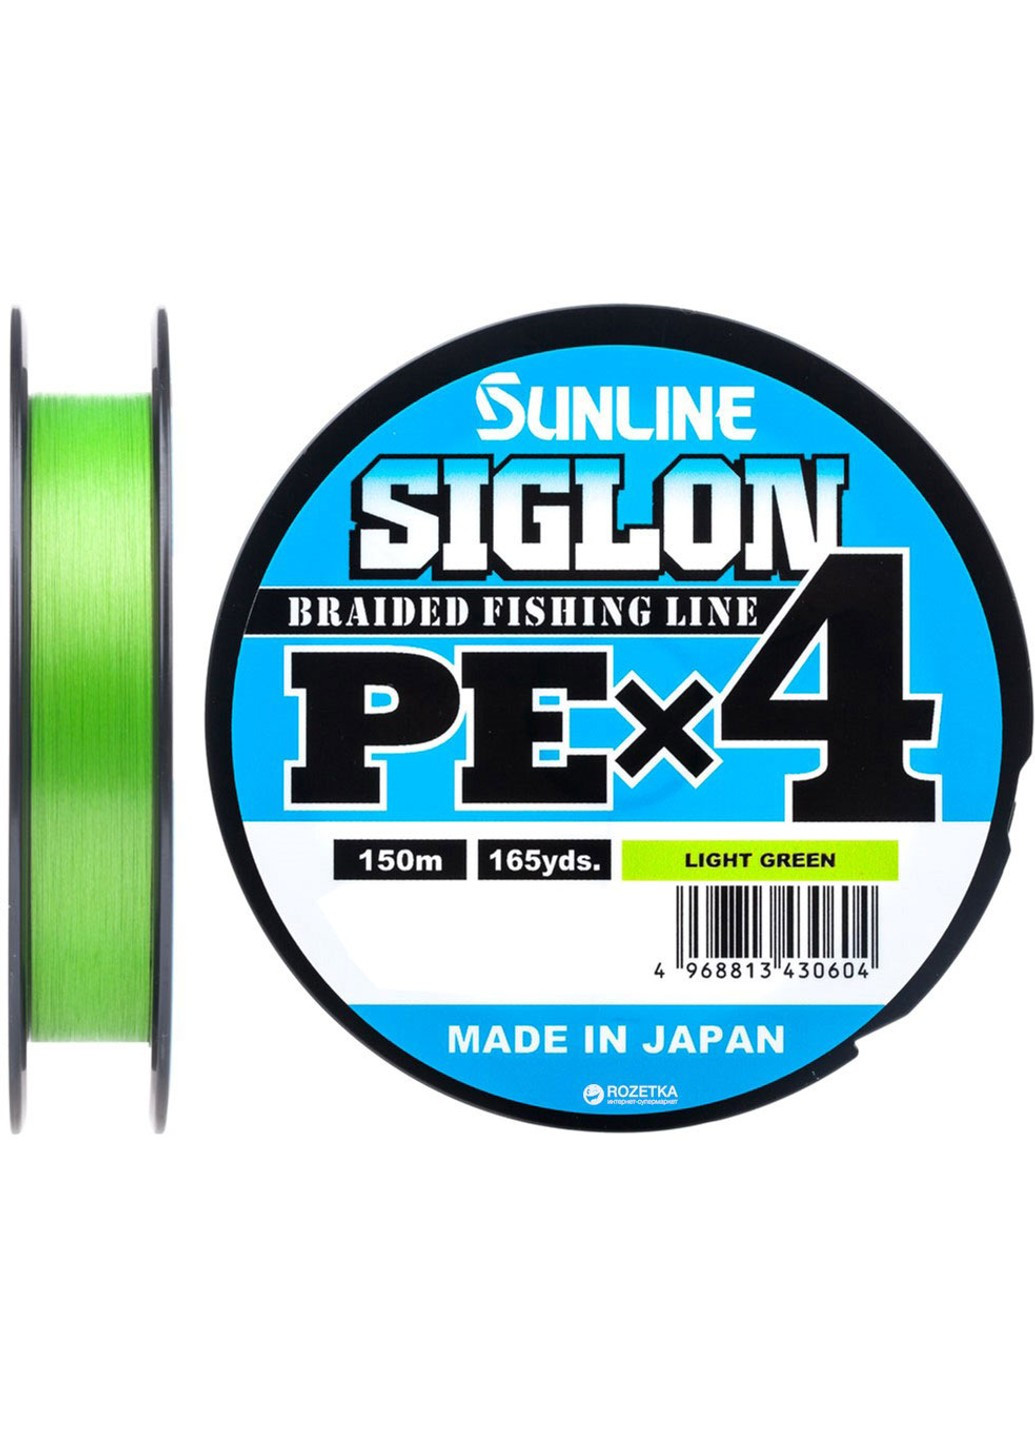 1658-09-00 Шнур Siglon PE х4 150m (салат.) # 0.2 / 0.076mm 3lb / 1.6kg Sunline (252468200)